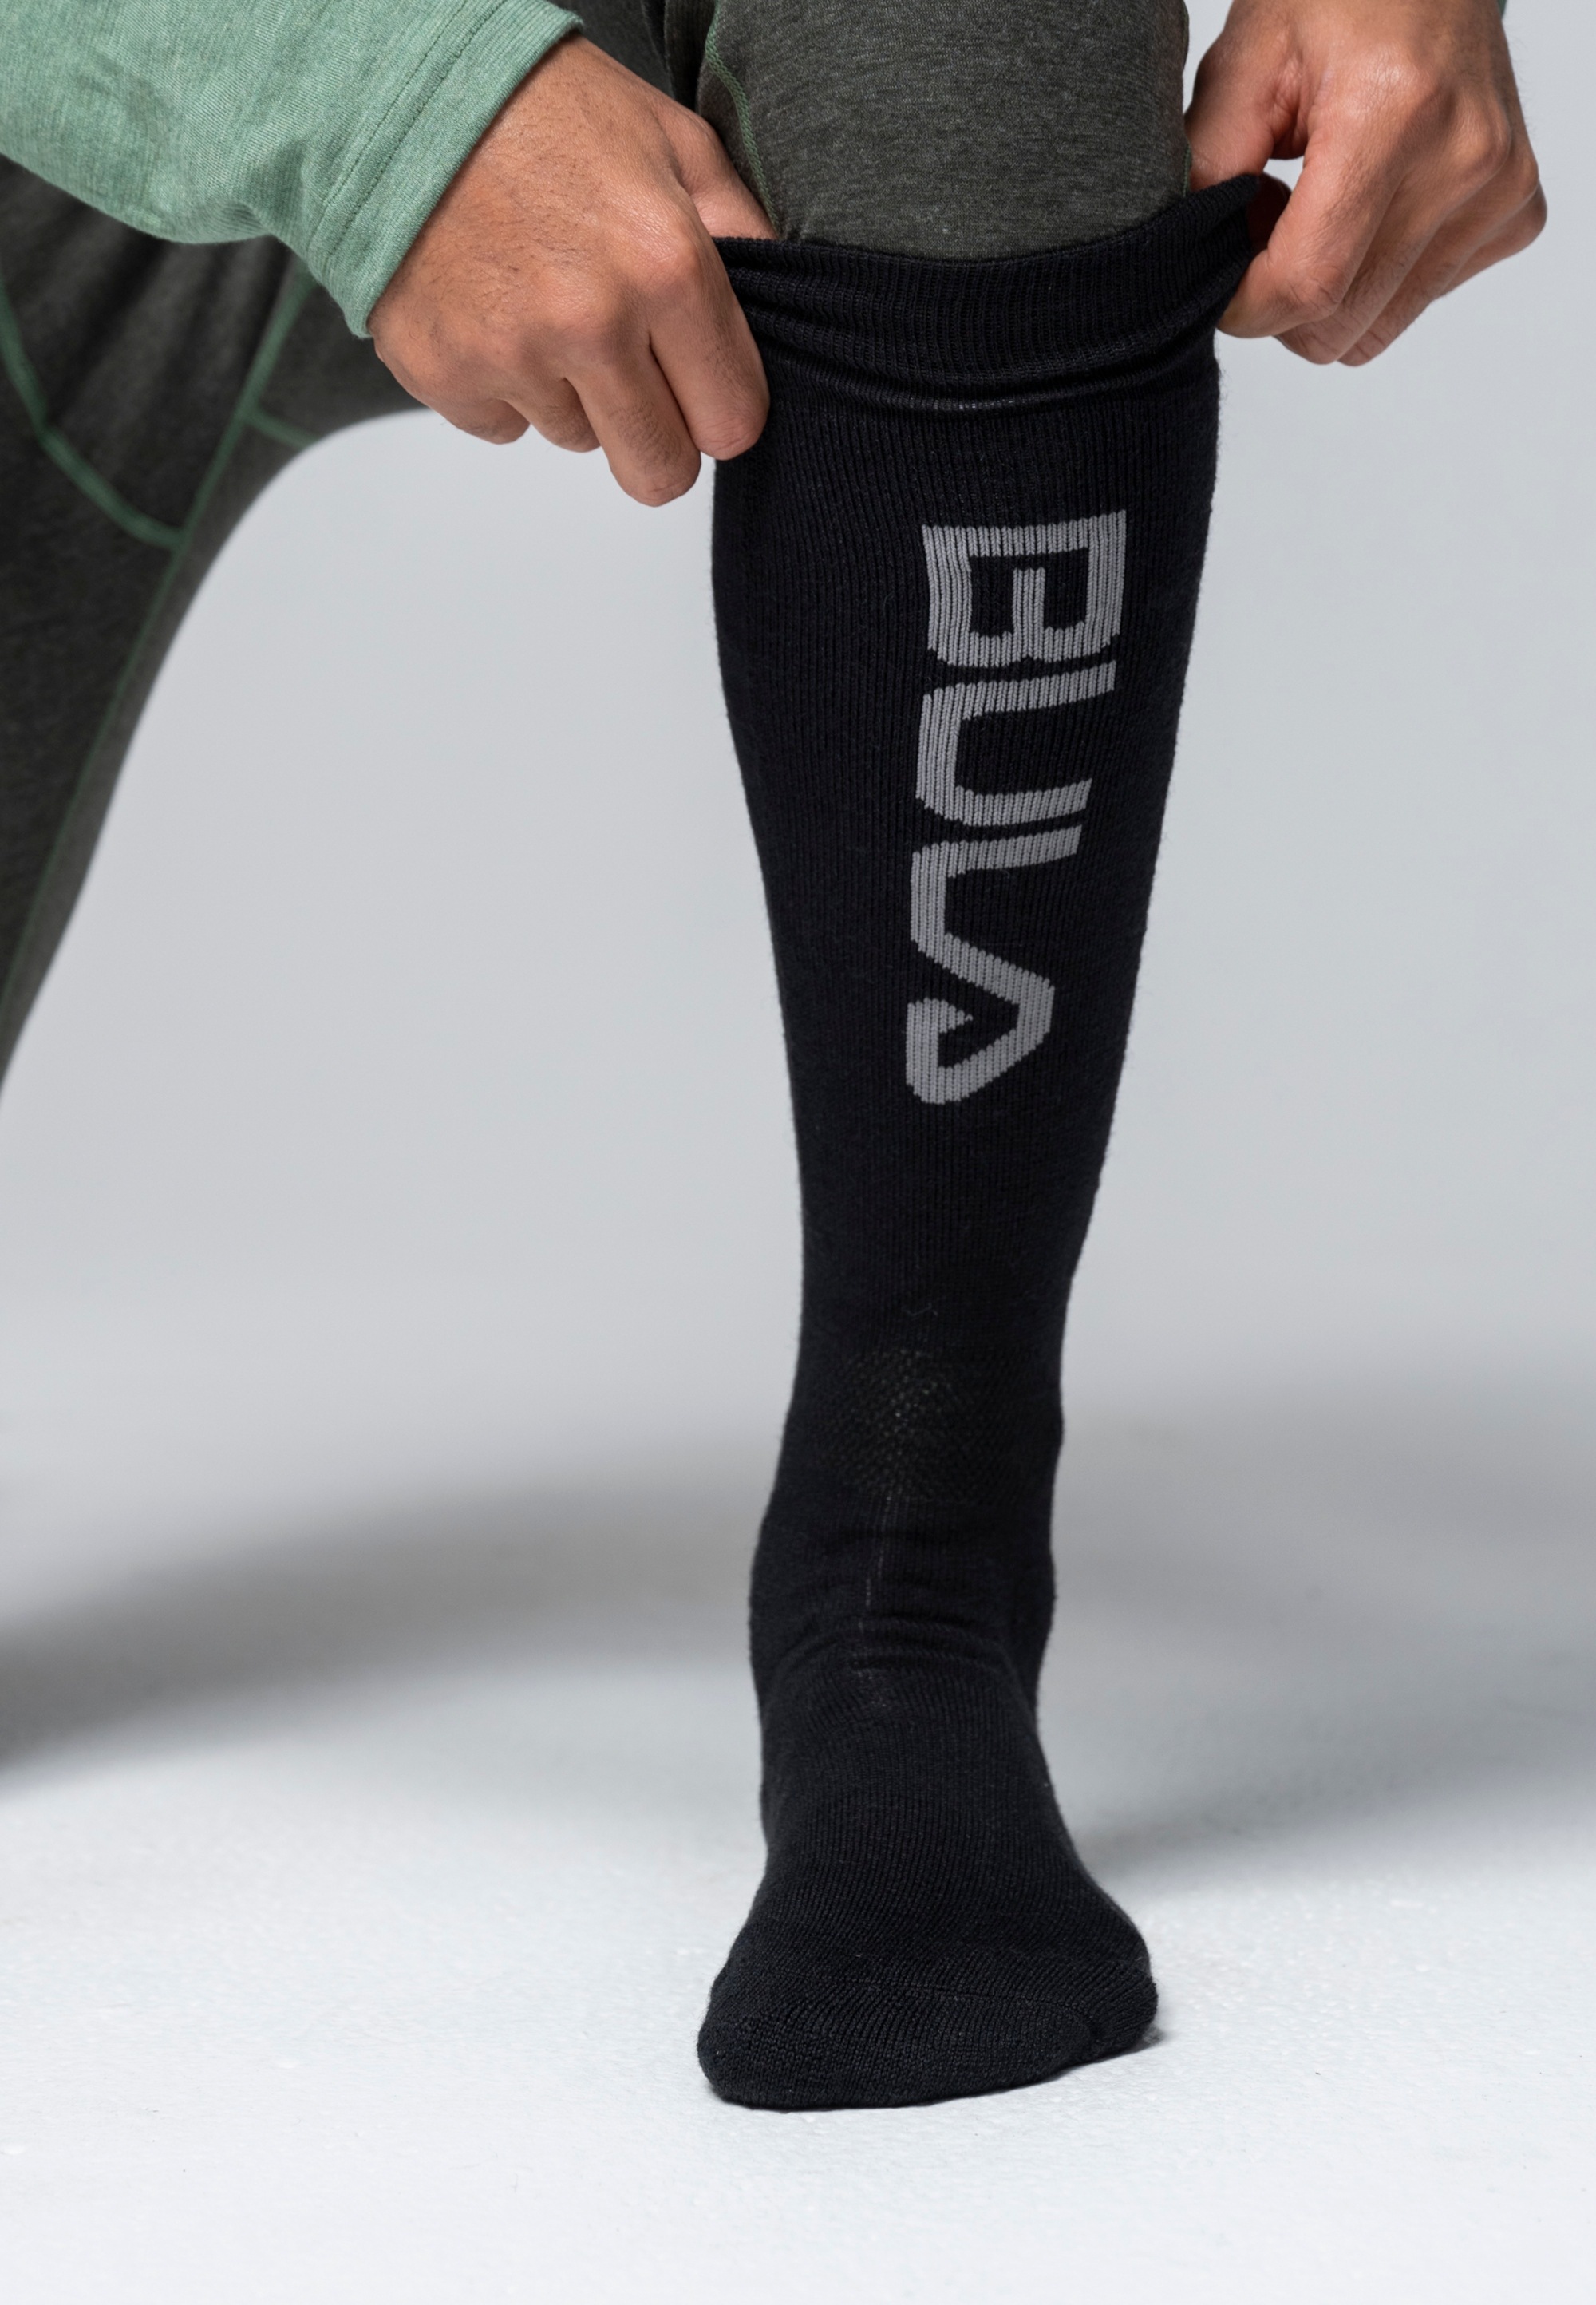 BULA Socken, mit kuscheligem Tragekomfort